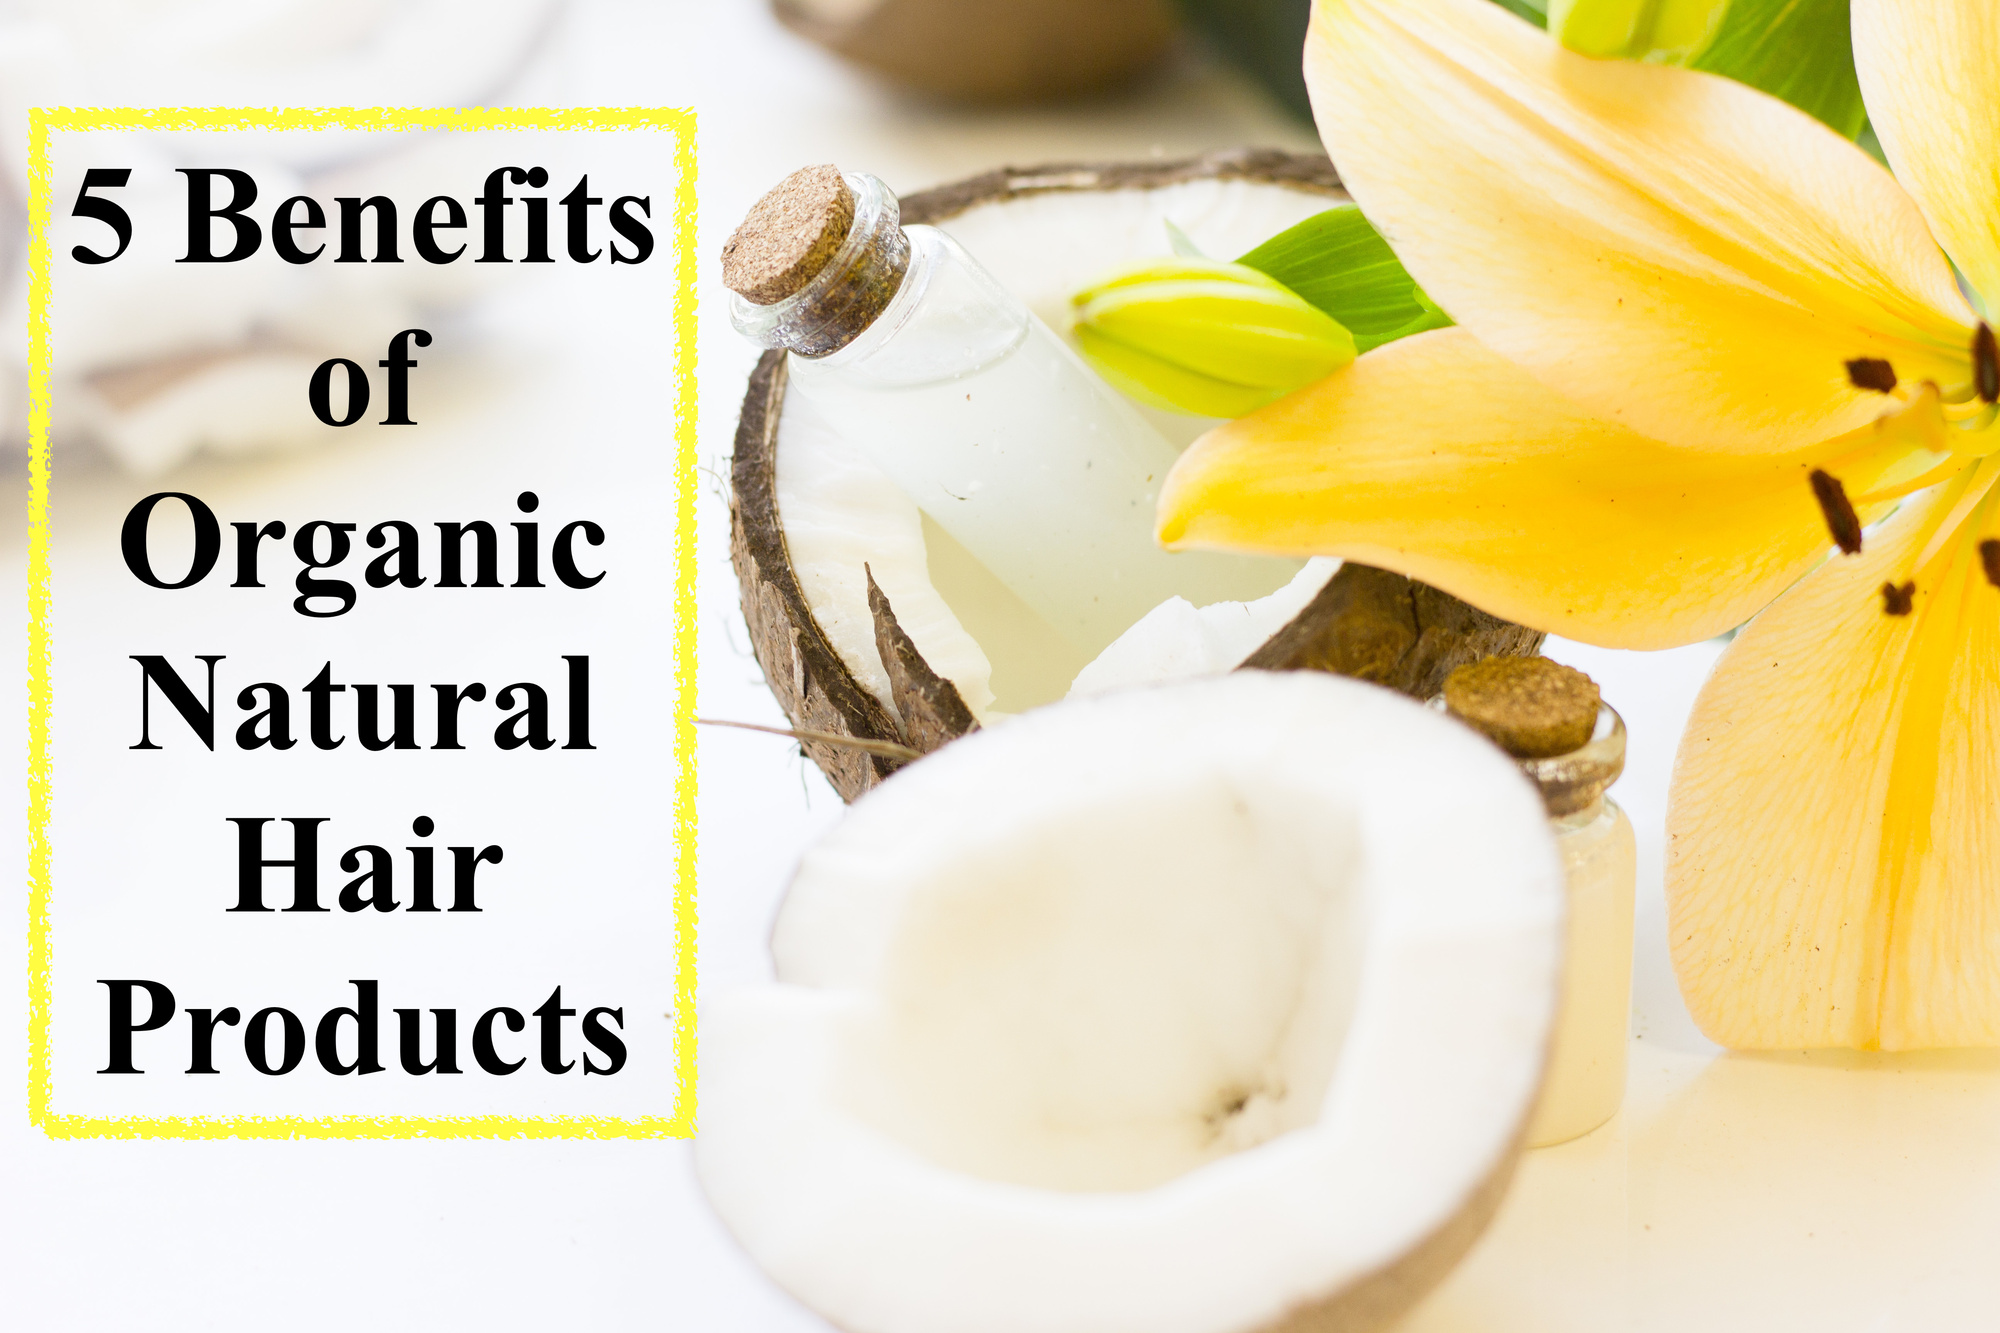 Organic, Natural Hair Products